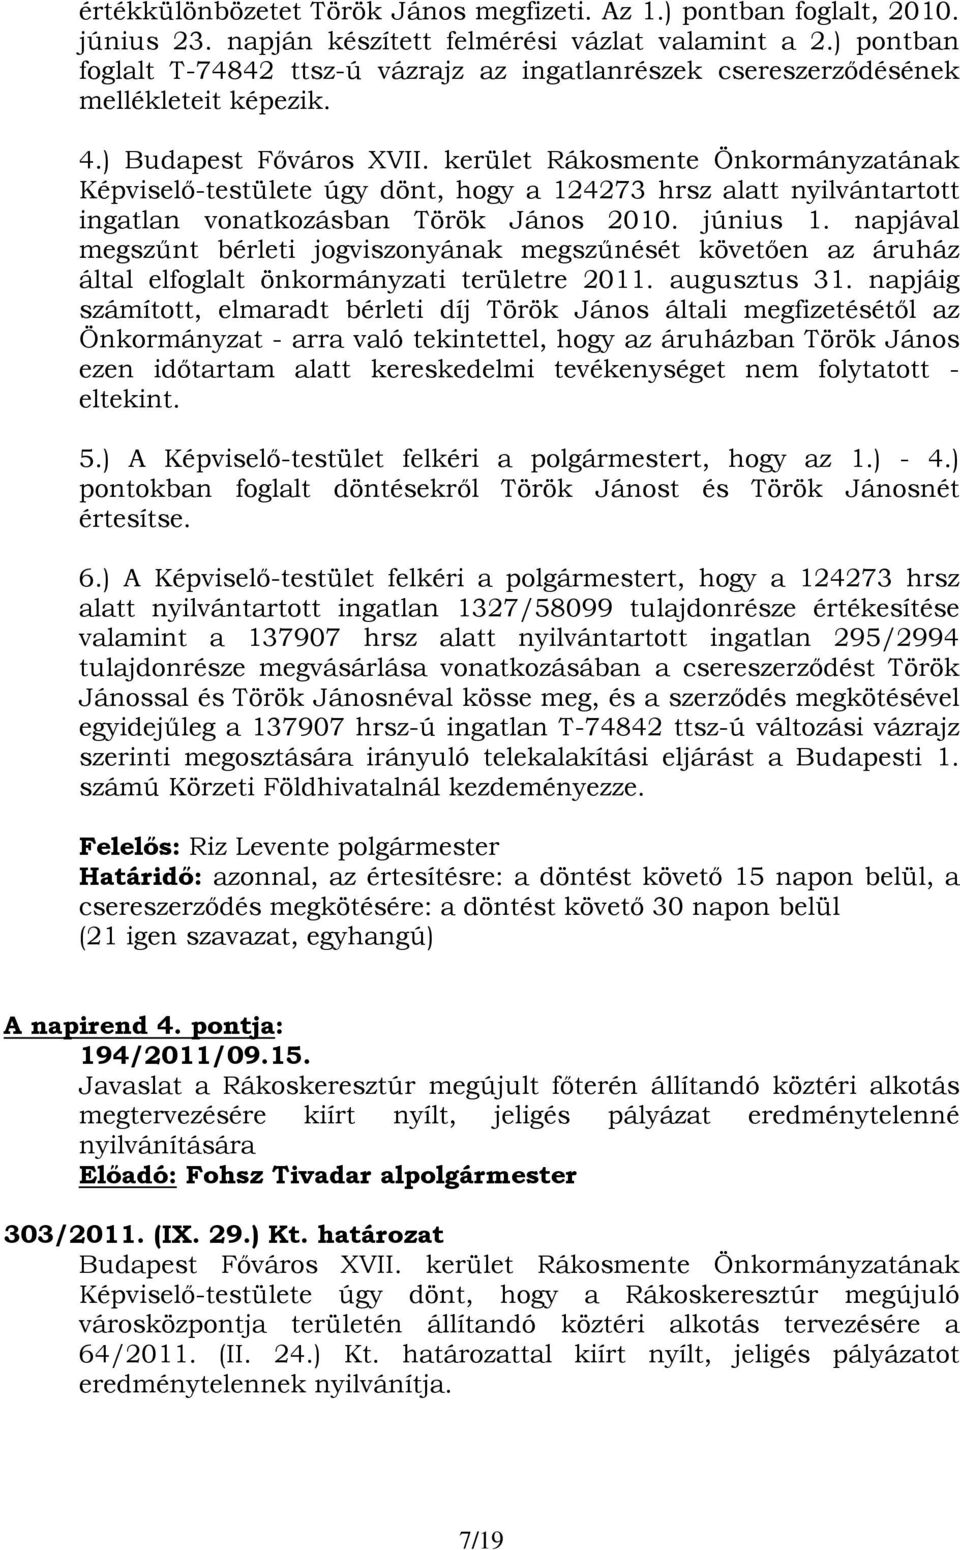 kerület Rákosmente Önkormányzatának Képviselő-testülete úgy dönt, hogy a 124273 hrsz alatt nyilvántartott ingatlan vonatkozásban Török János 2010. június 1.